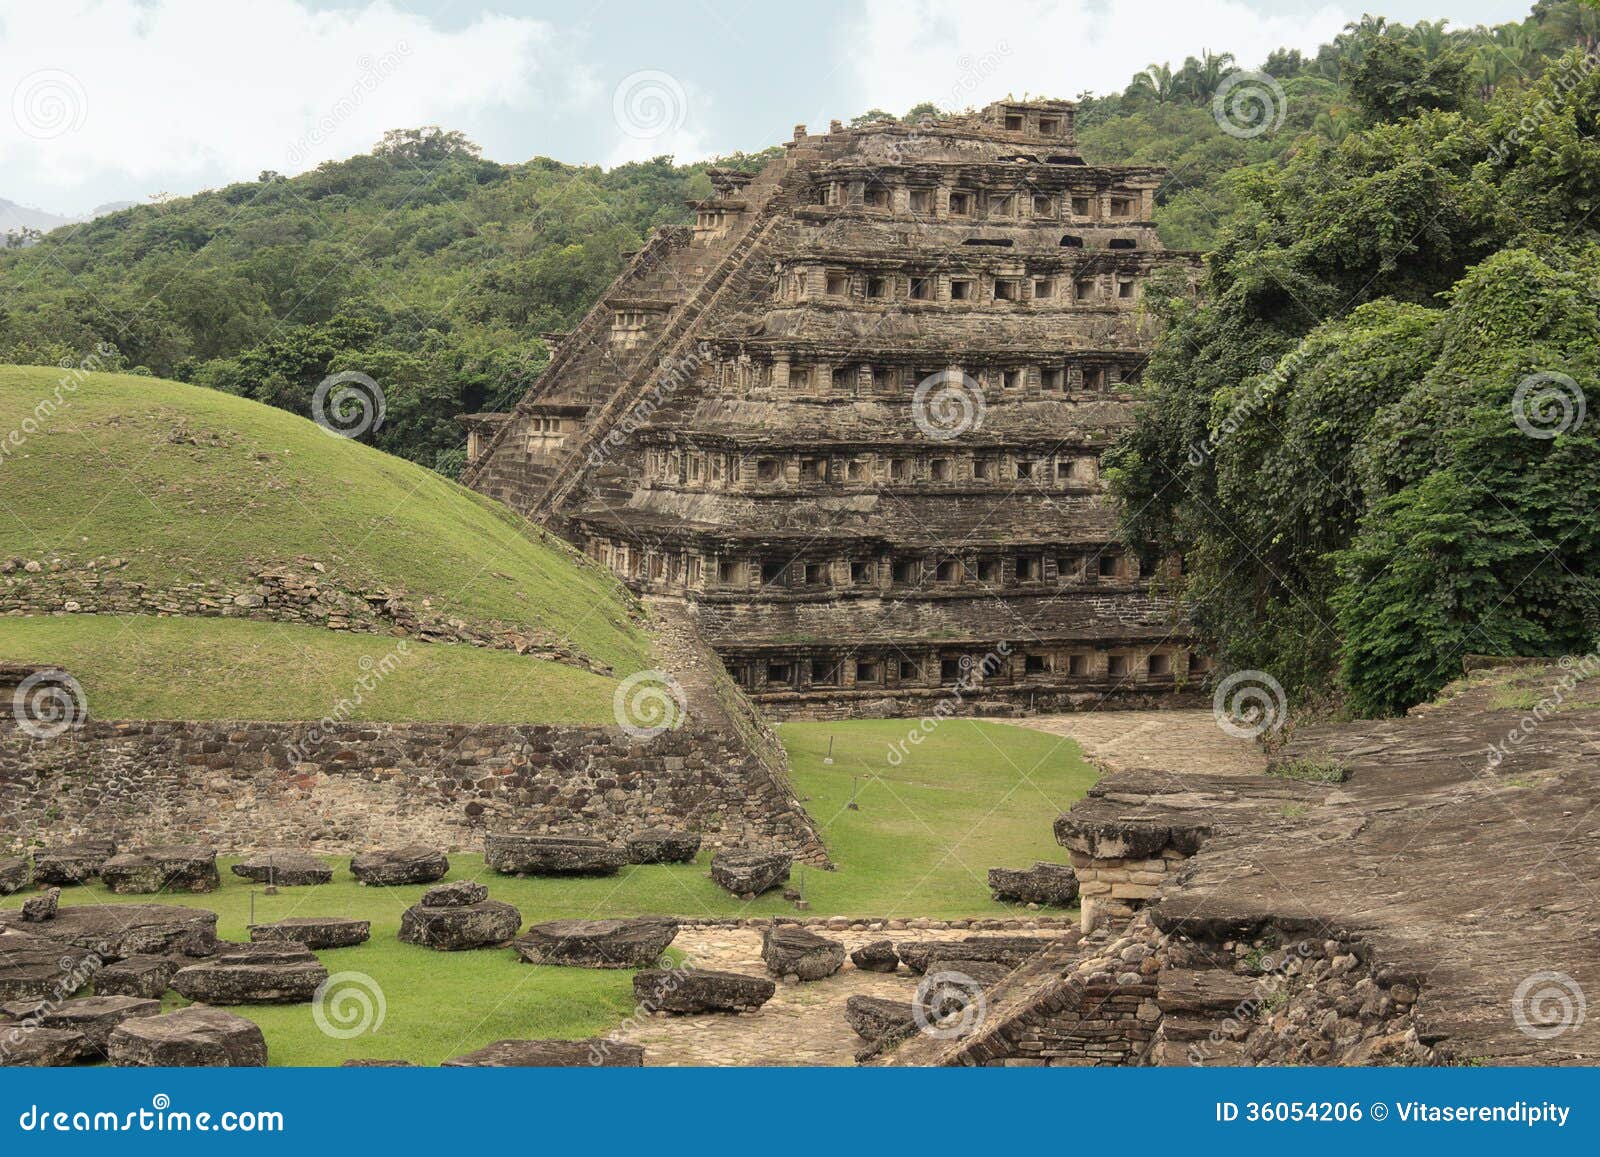 el tajin archaeological ruins, veracruz, mexico